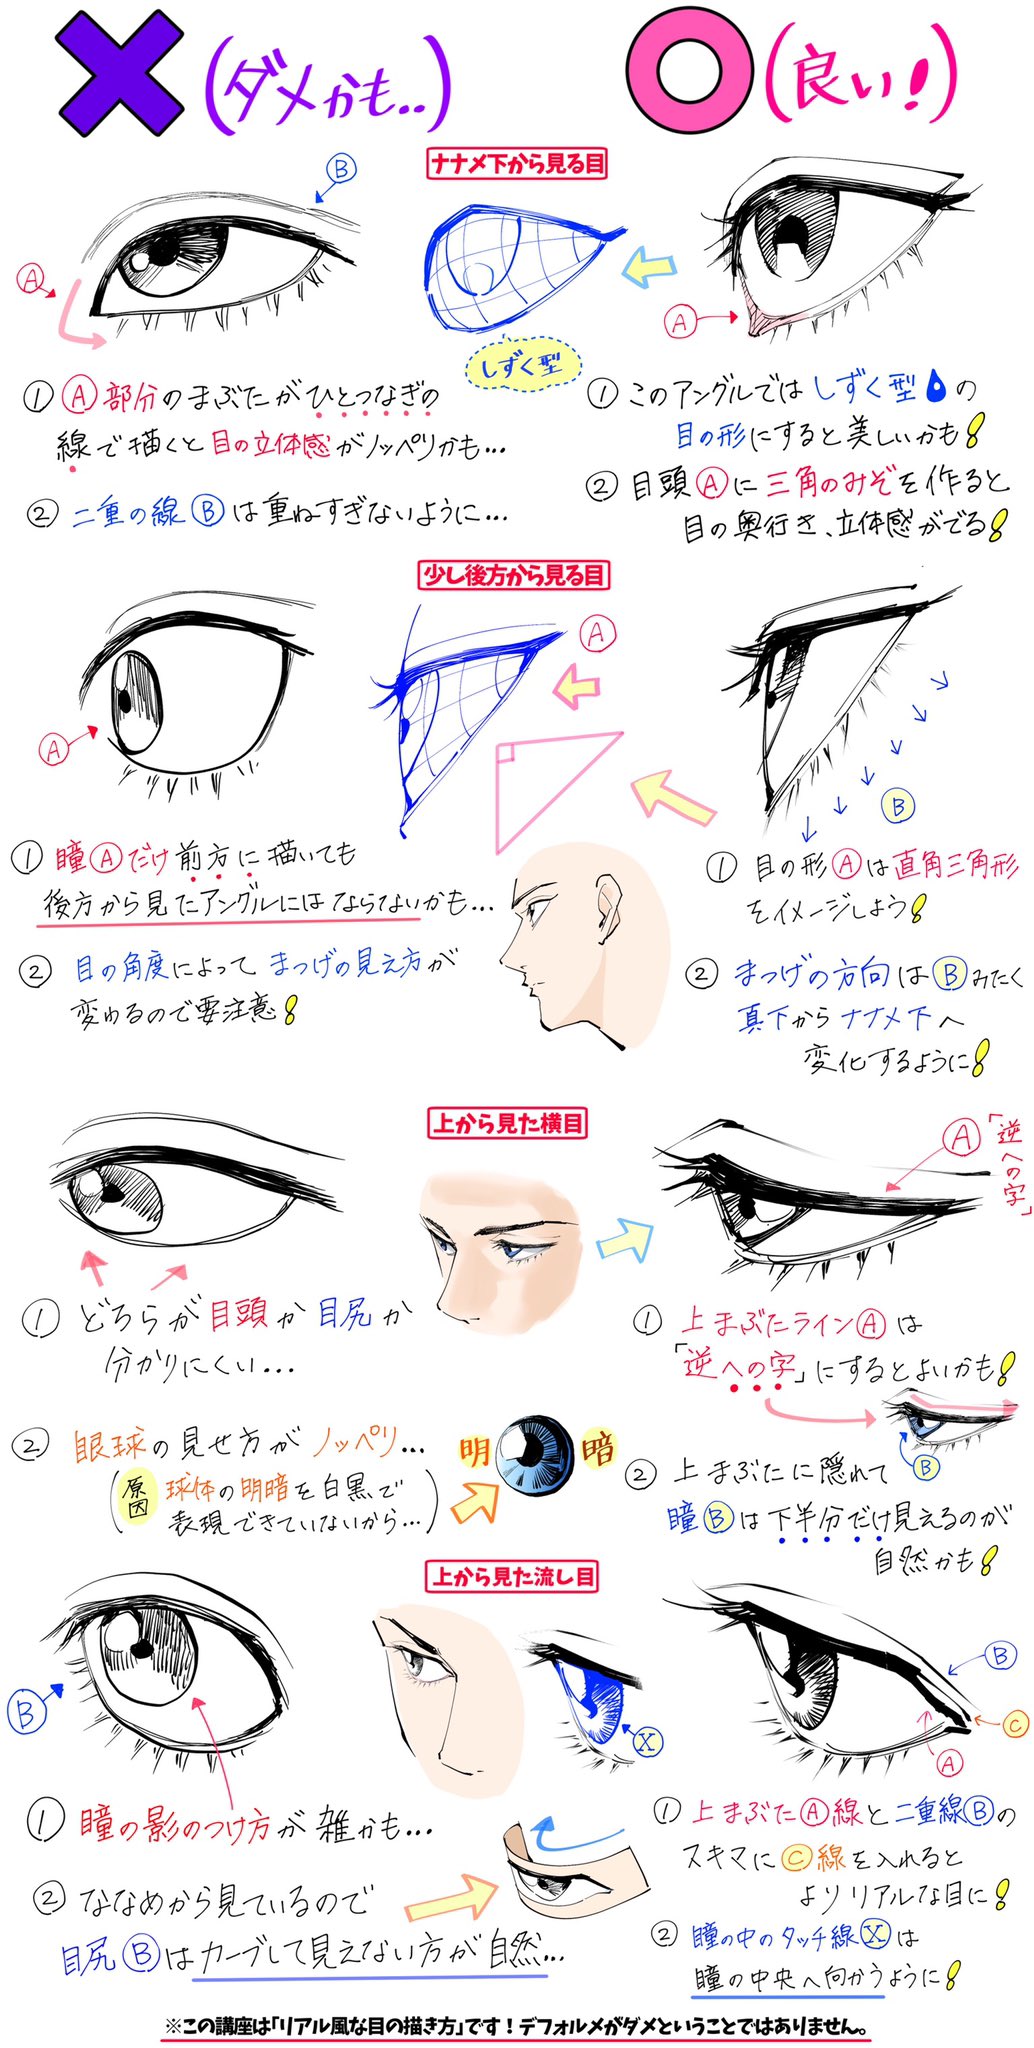 吉村拓也 イラスト講座 瞳の描き方 Amp ペン入れ方法 綺麗な目の線画 が上達するための ダメかも と 良いかも T Co Bv5hhpcr0x Twitter